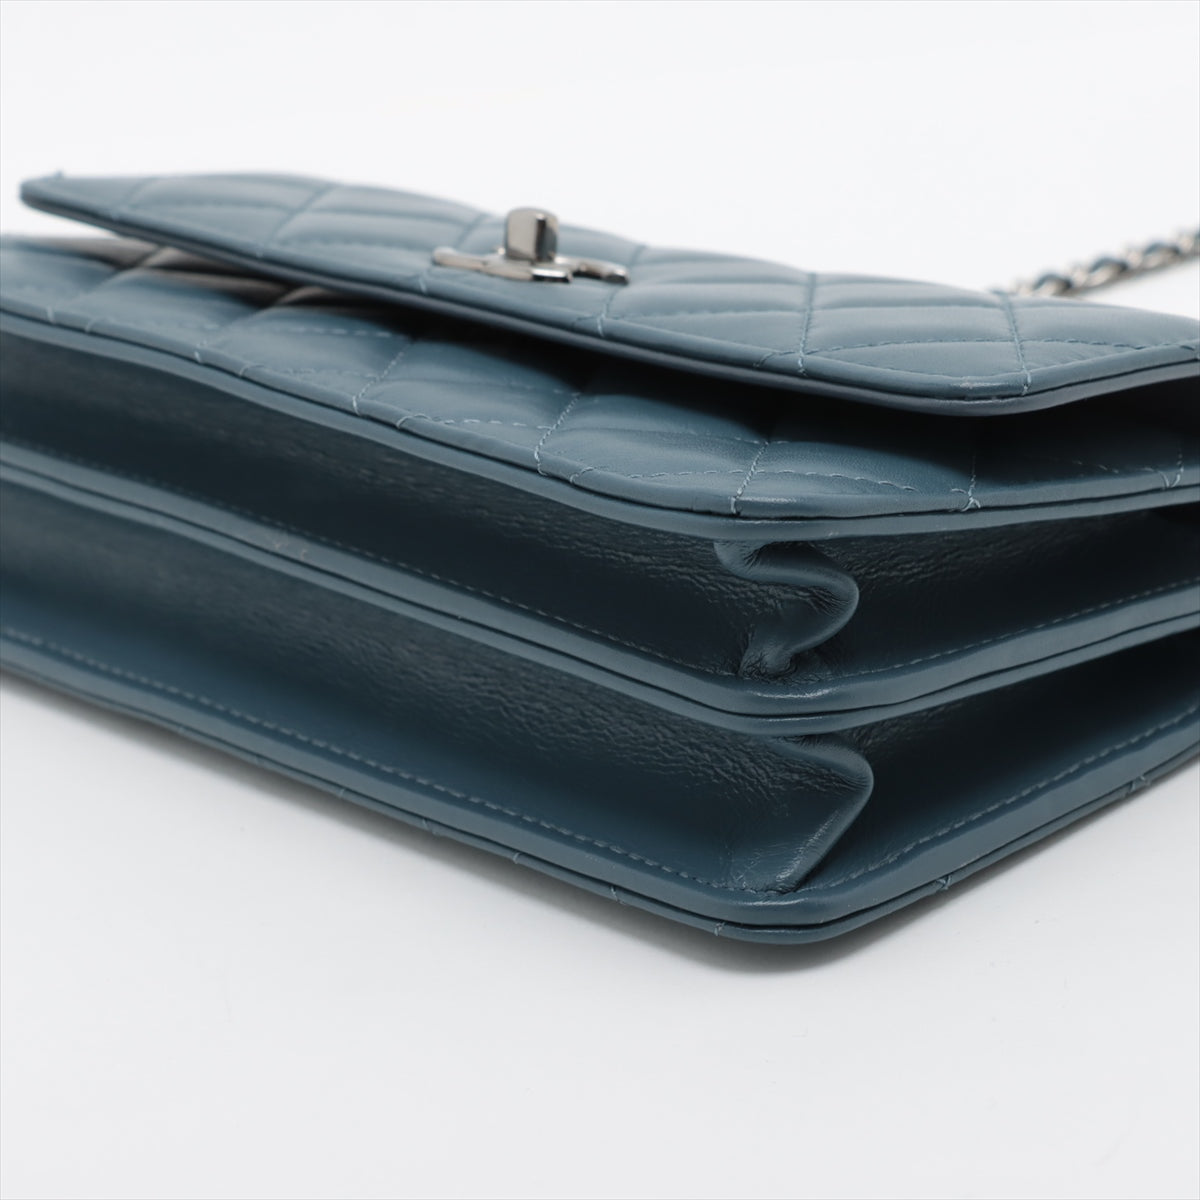 Chanel Matelasse Lambskin Chain wallet Blue Silver Metal fittings